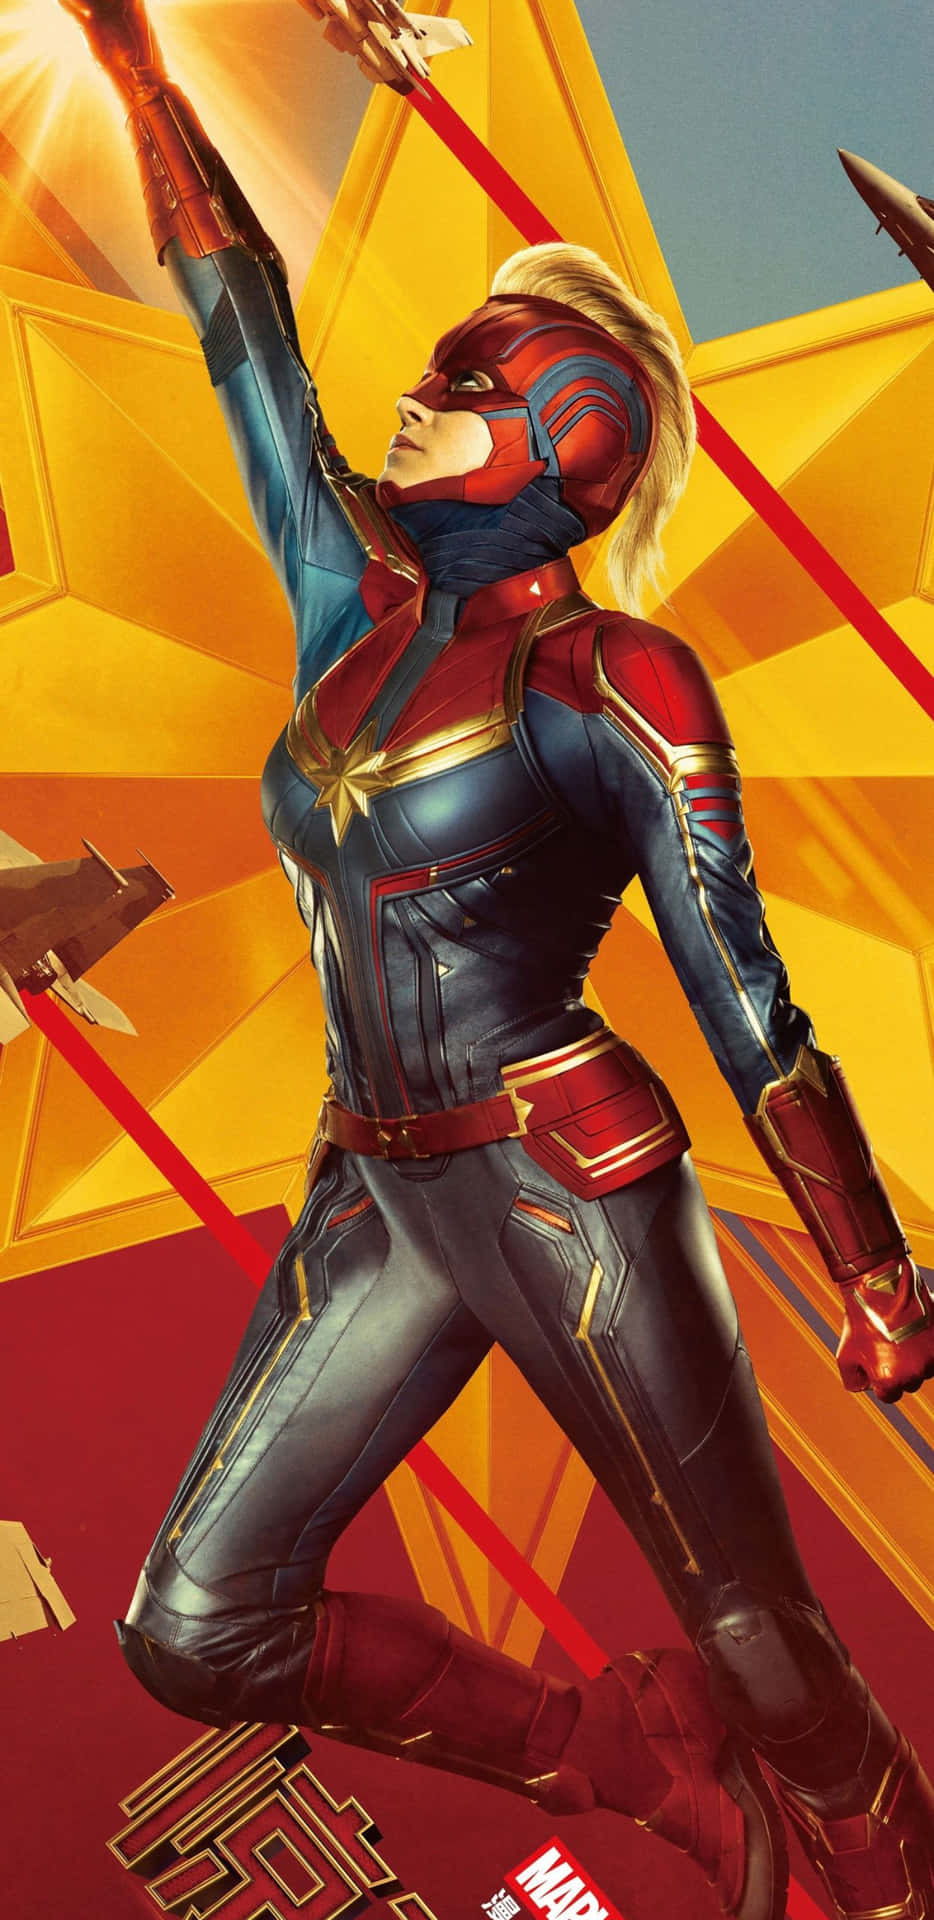 Gördig Redo För Ett Fantastiskt Äventyr Med Captain Marvel Och Pixel 3xl Som Bakgrundsbild På Datorn Eller Mobilen!